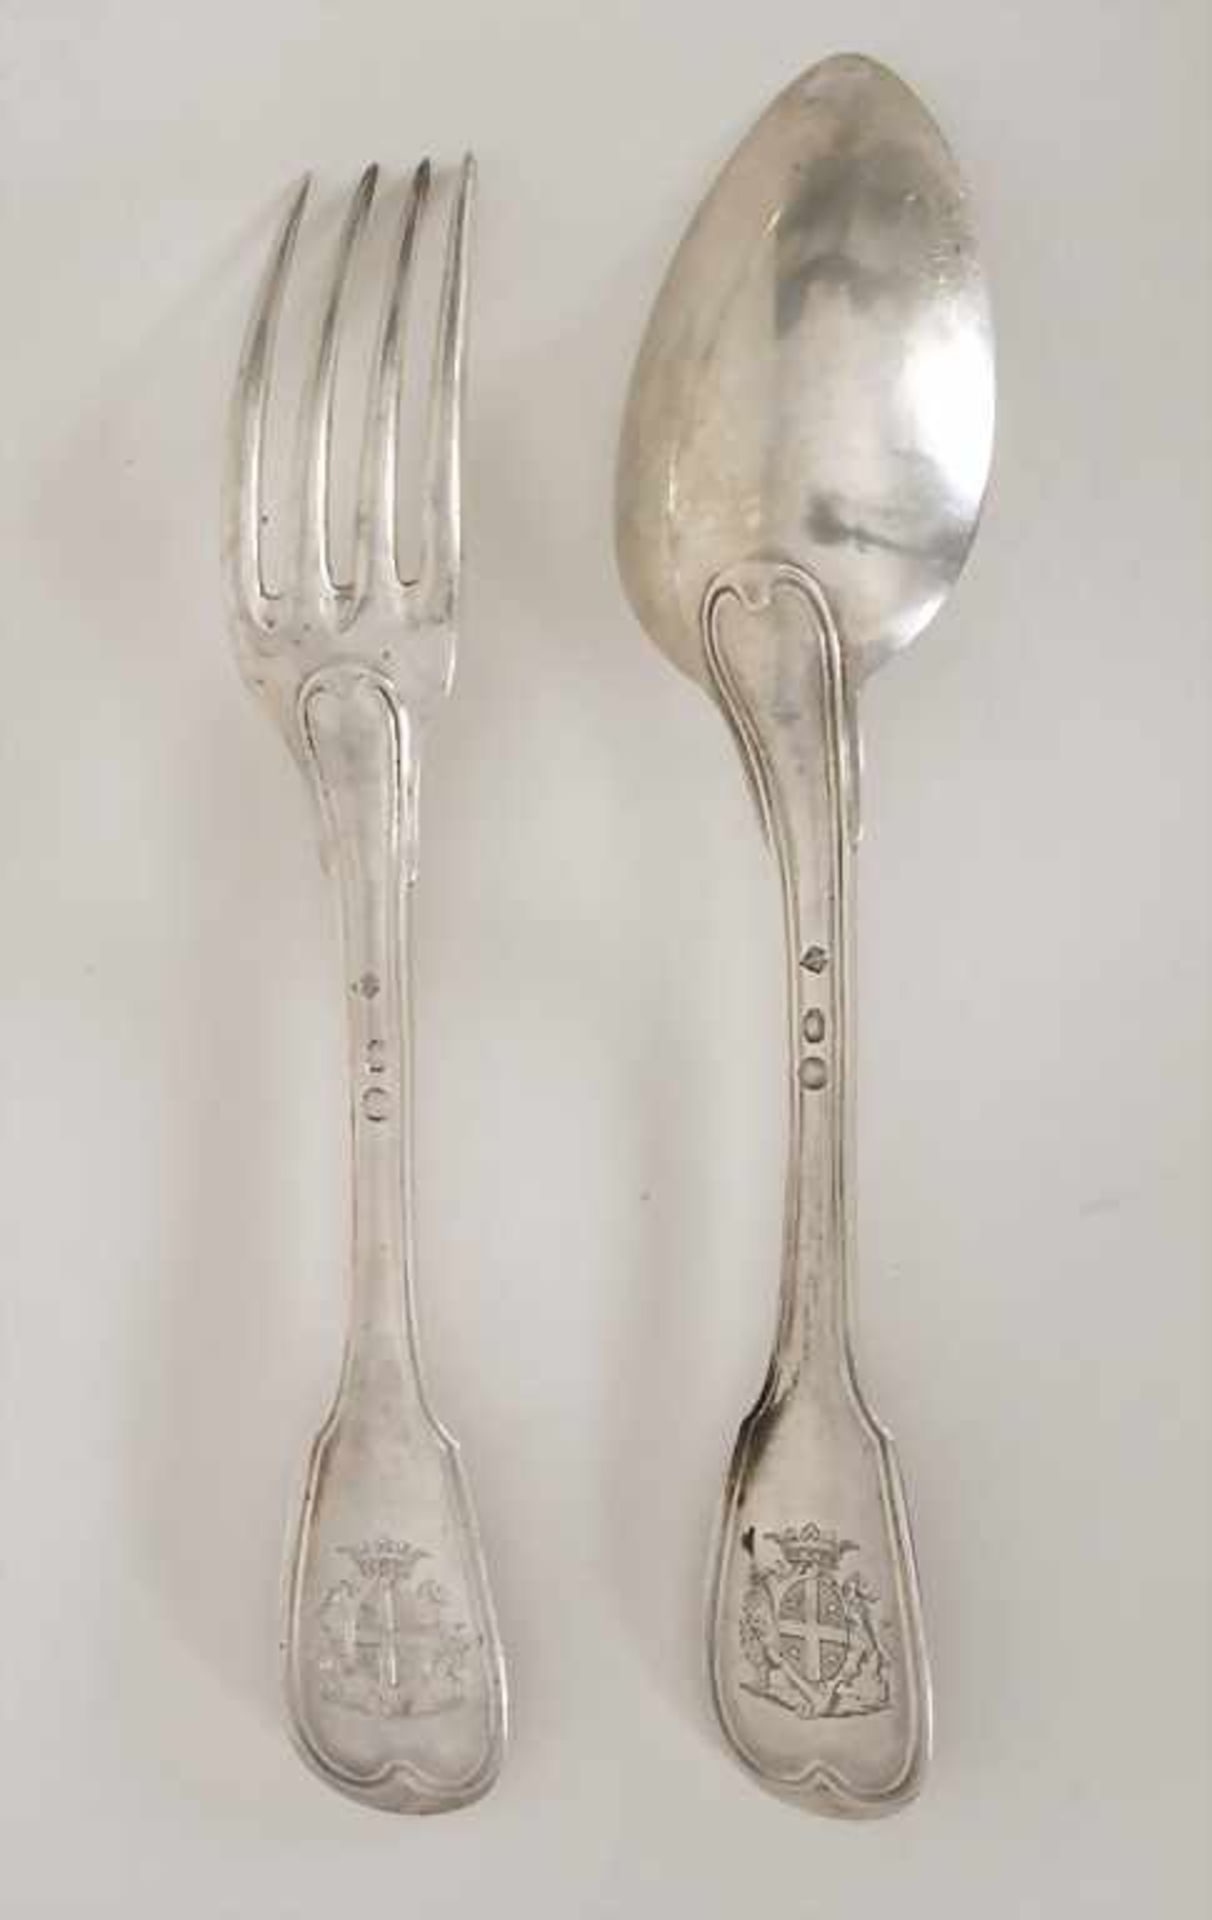 Restbesteck / 8 pieces of silver cutlery, Paris, um 1800 - Bild 5 aus 6